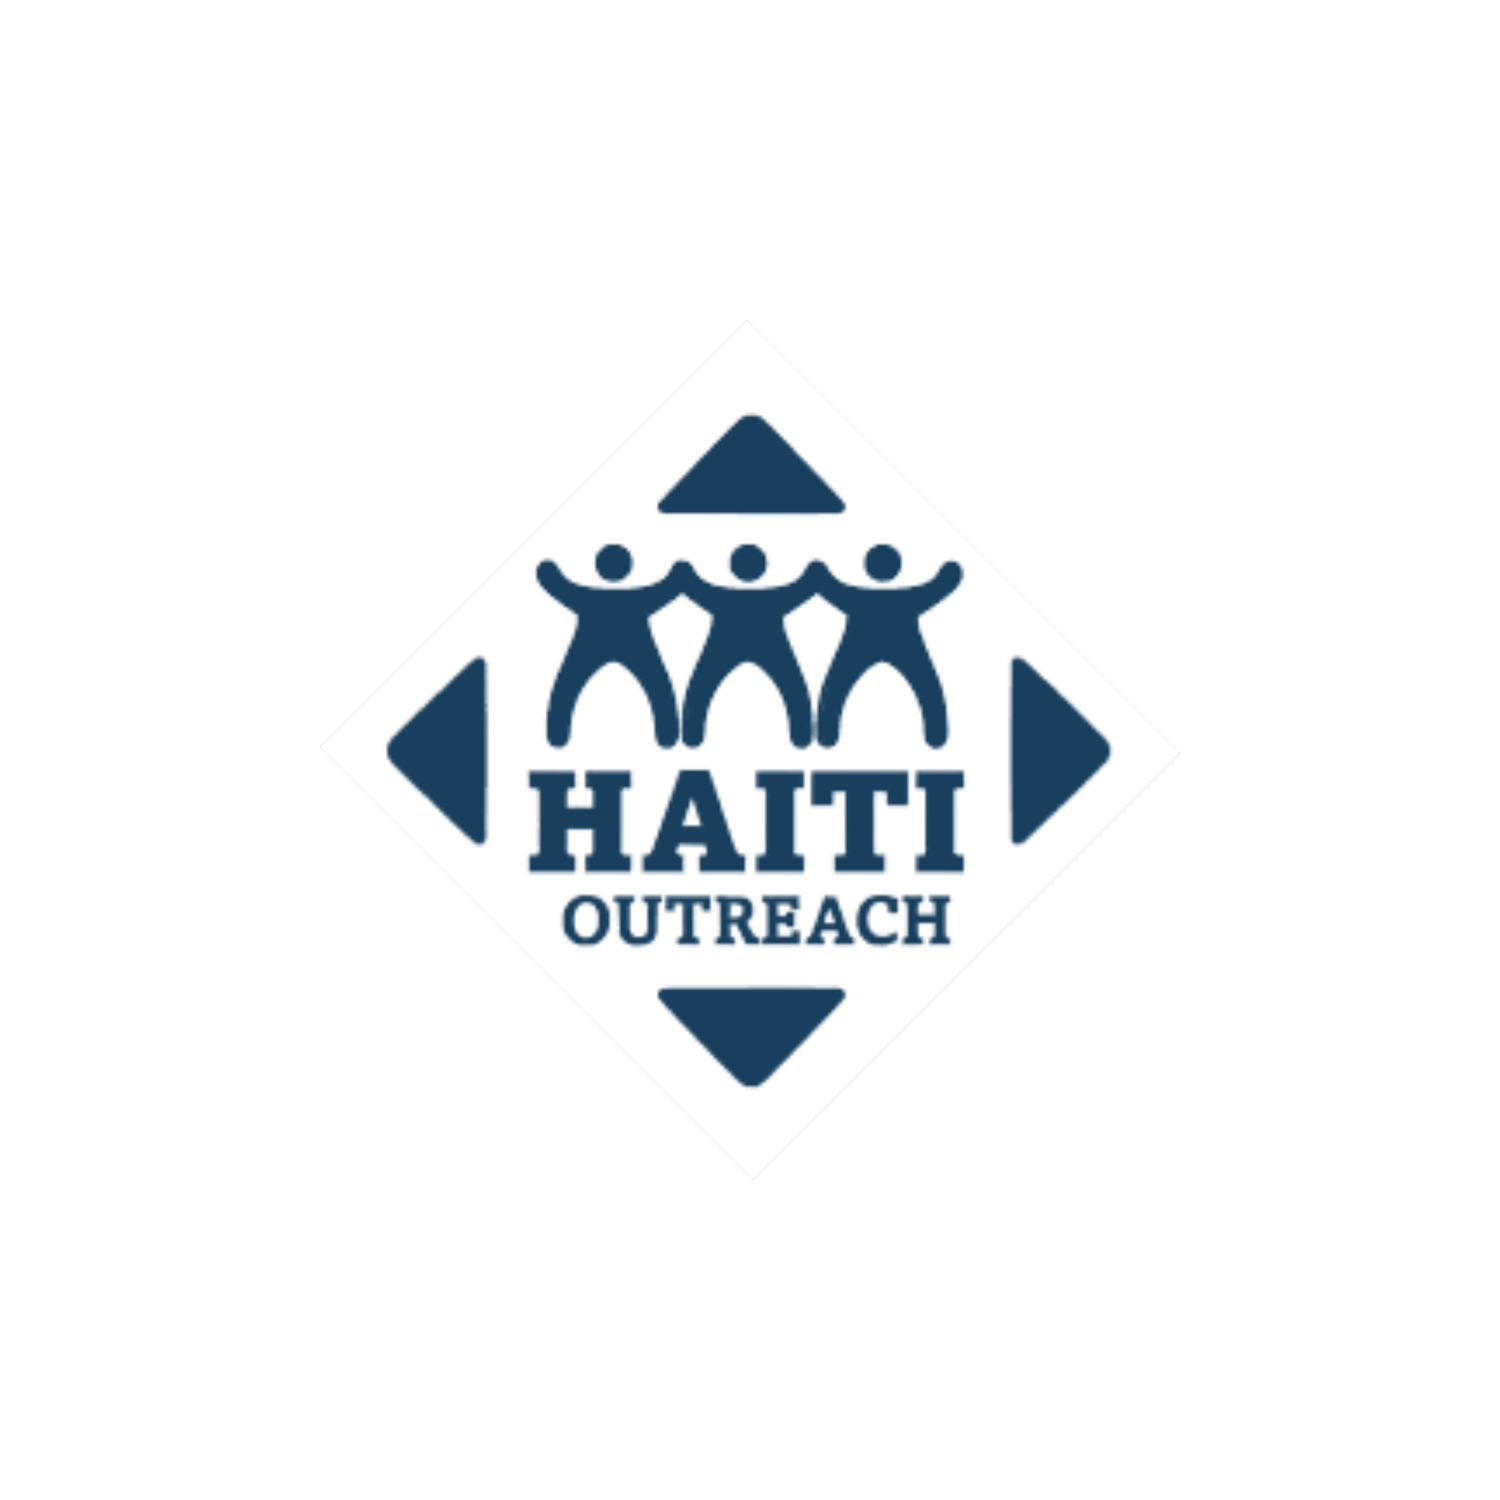 Haiti Outreach